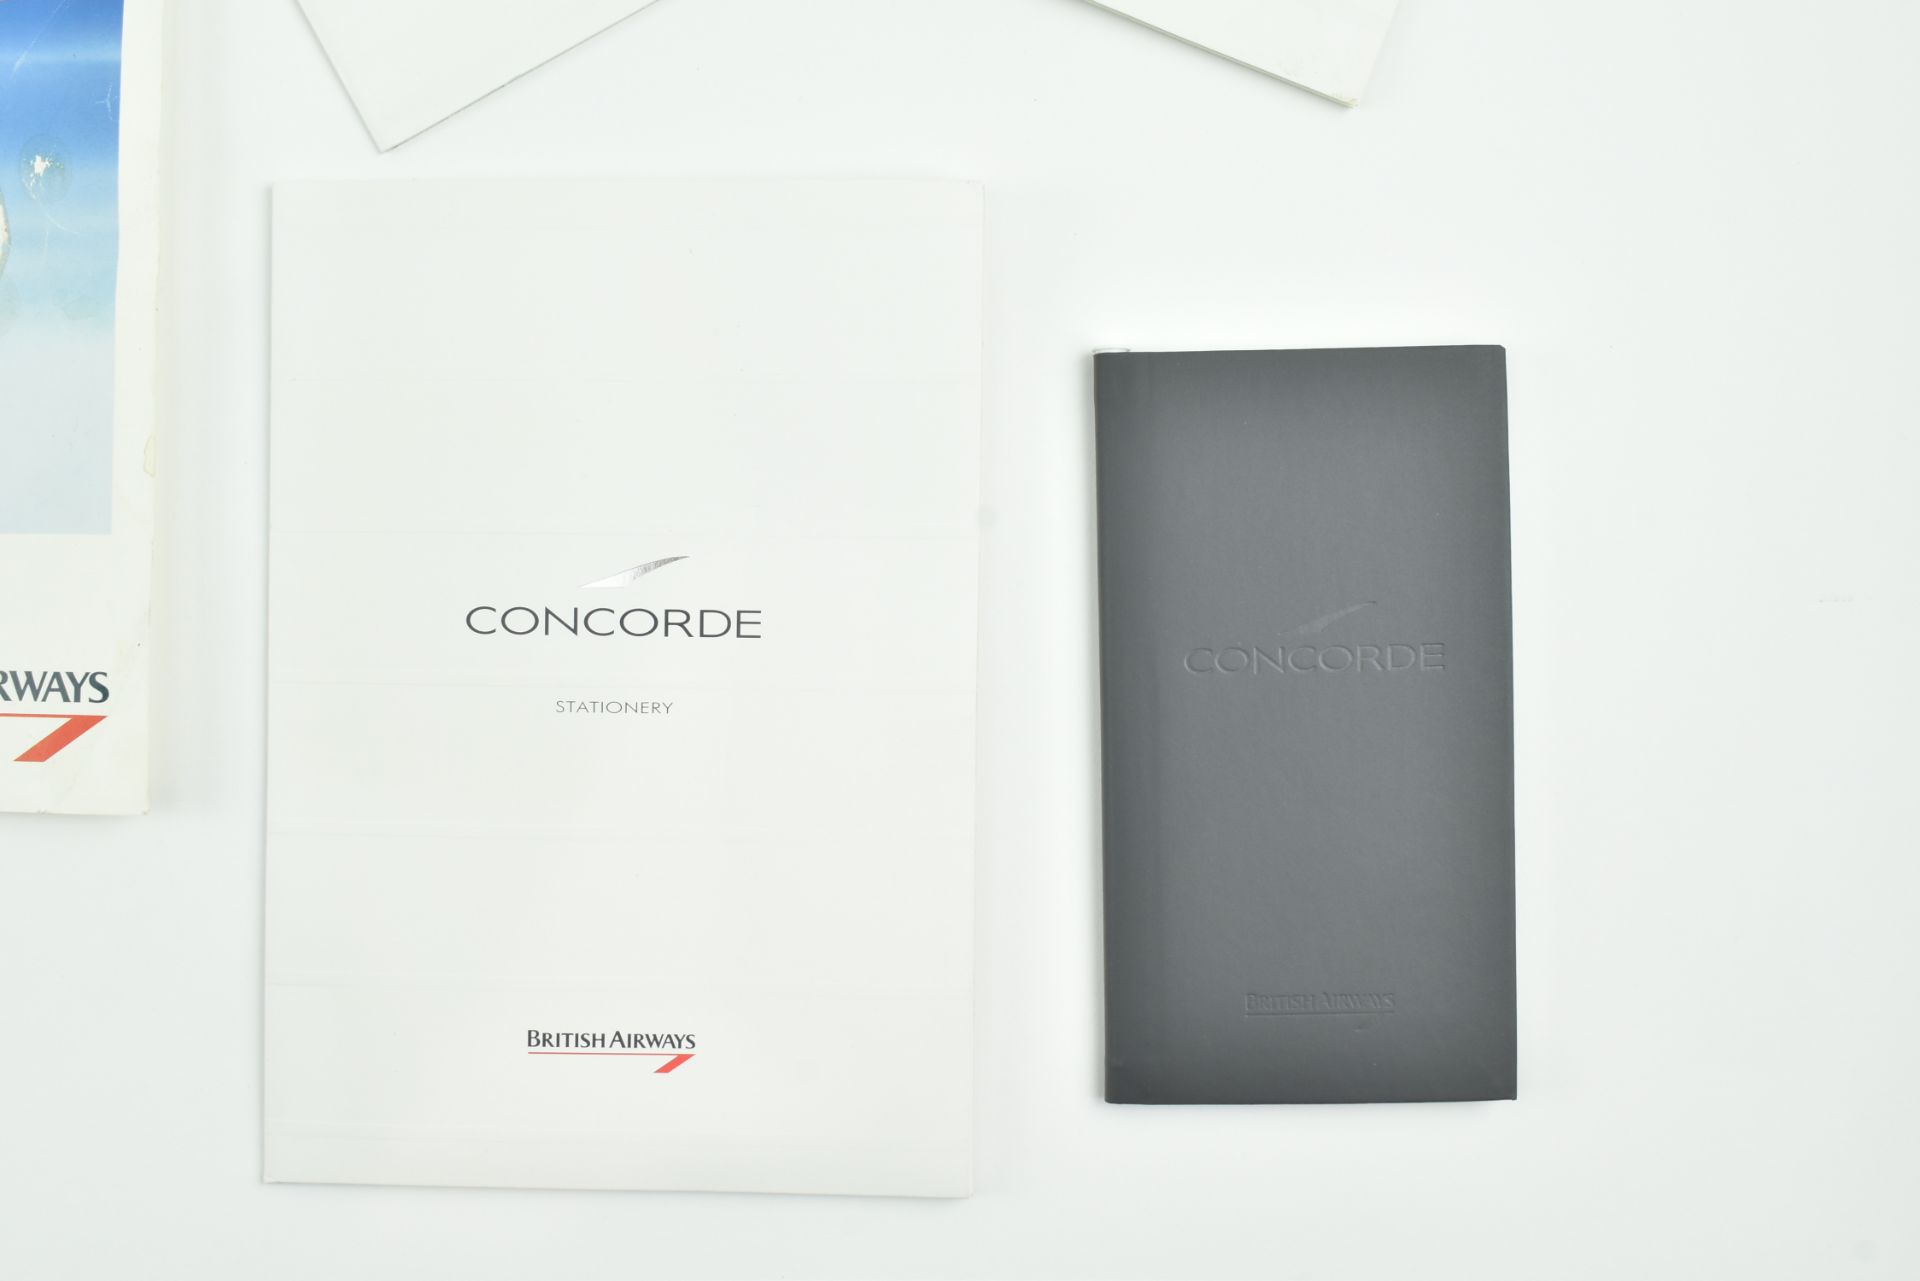 CONCORDE - COLLECTION OFCONCORDE MEMORABILIA - Bild 11 aus 12